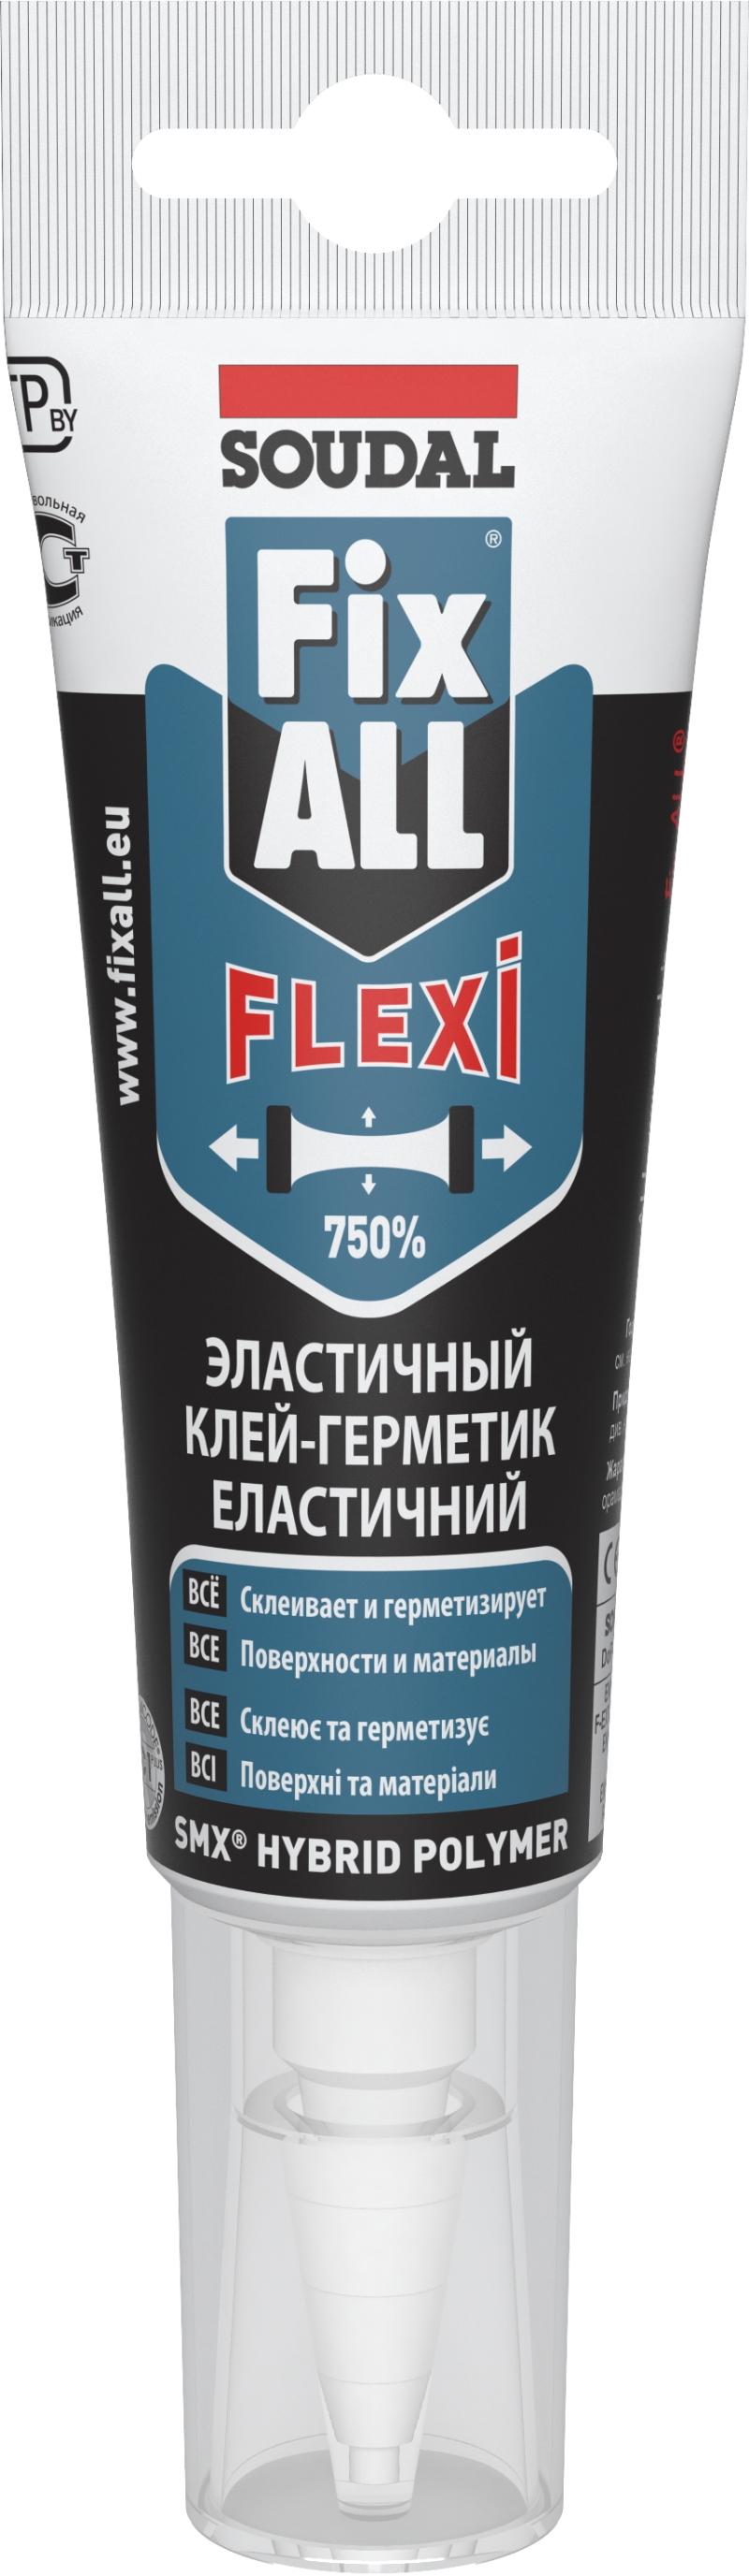 FIX ALL FLEXI  - 125 